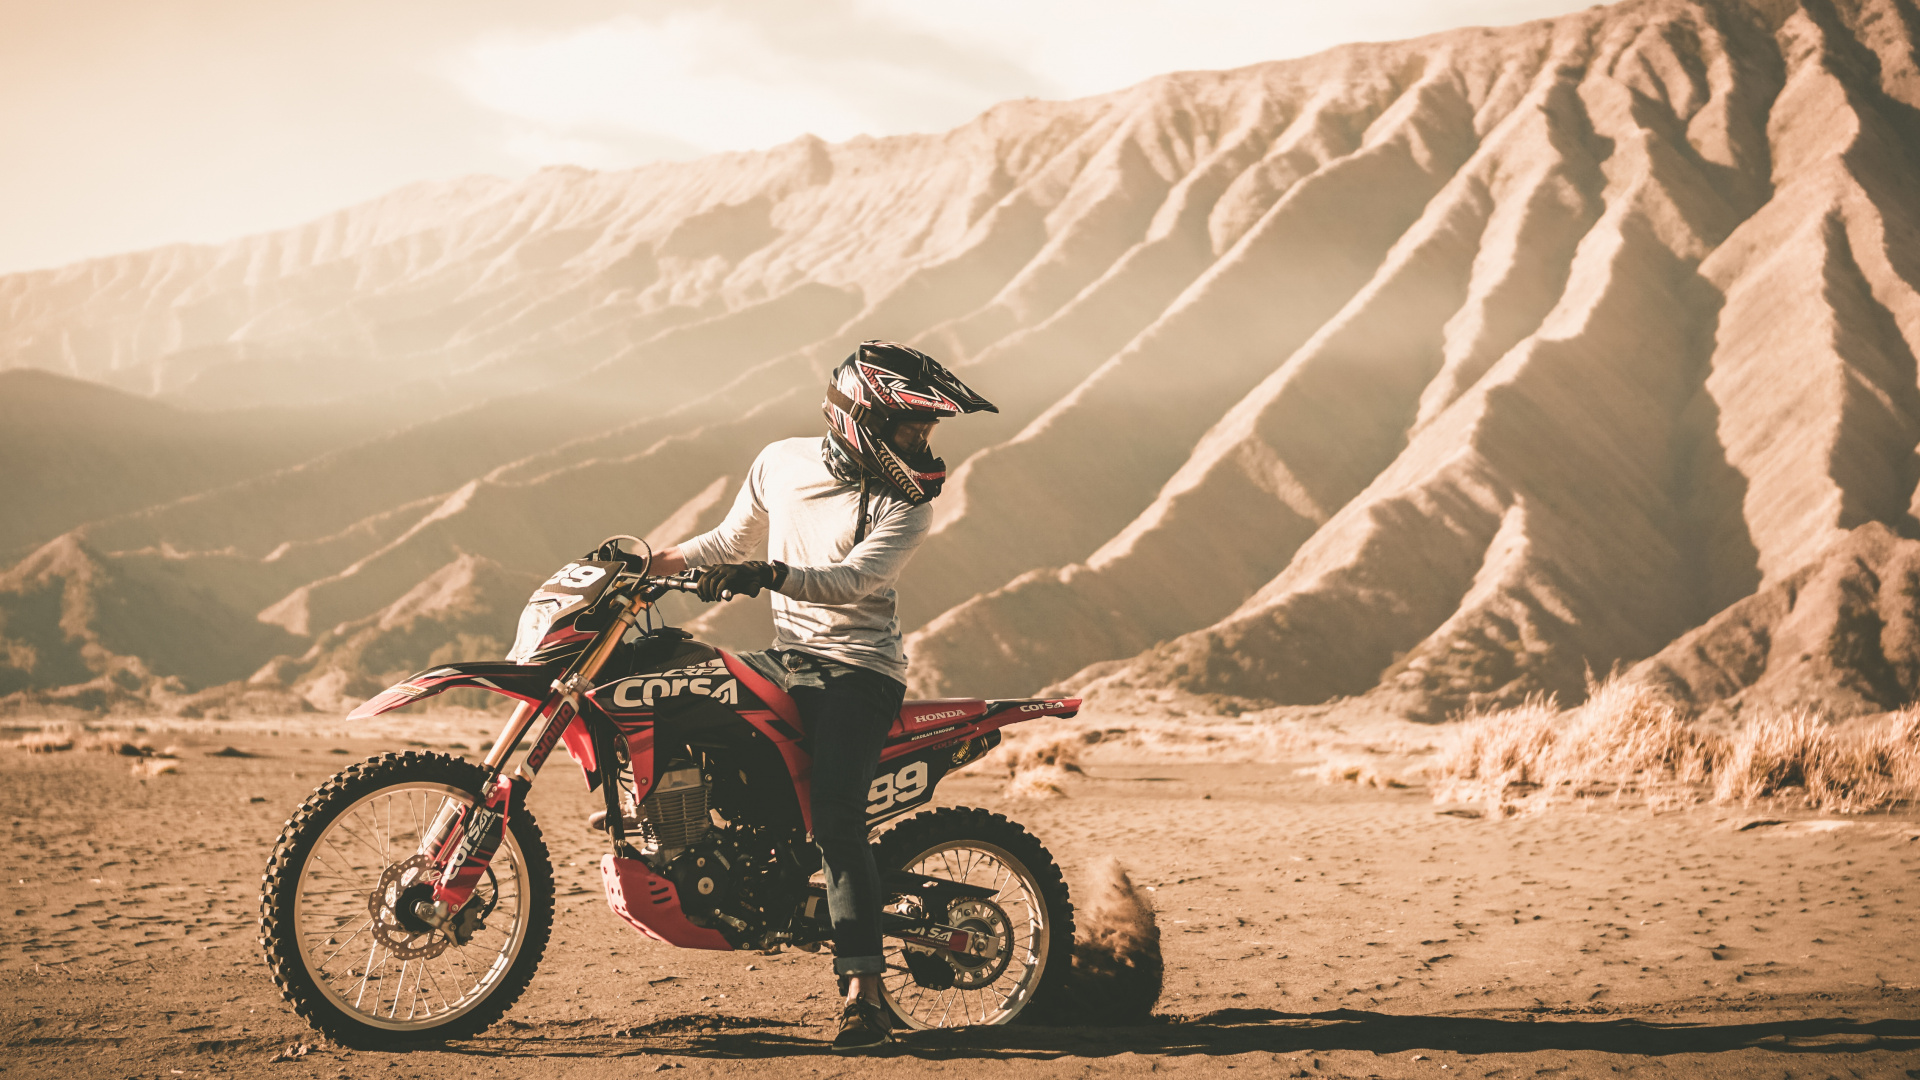 摩托车头盔, 摩托车越野赛, 越野, 耐力, 沙漠赛车 壁纸 1920x1080 允许